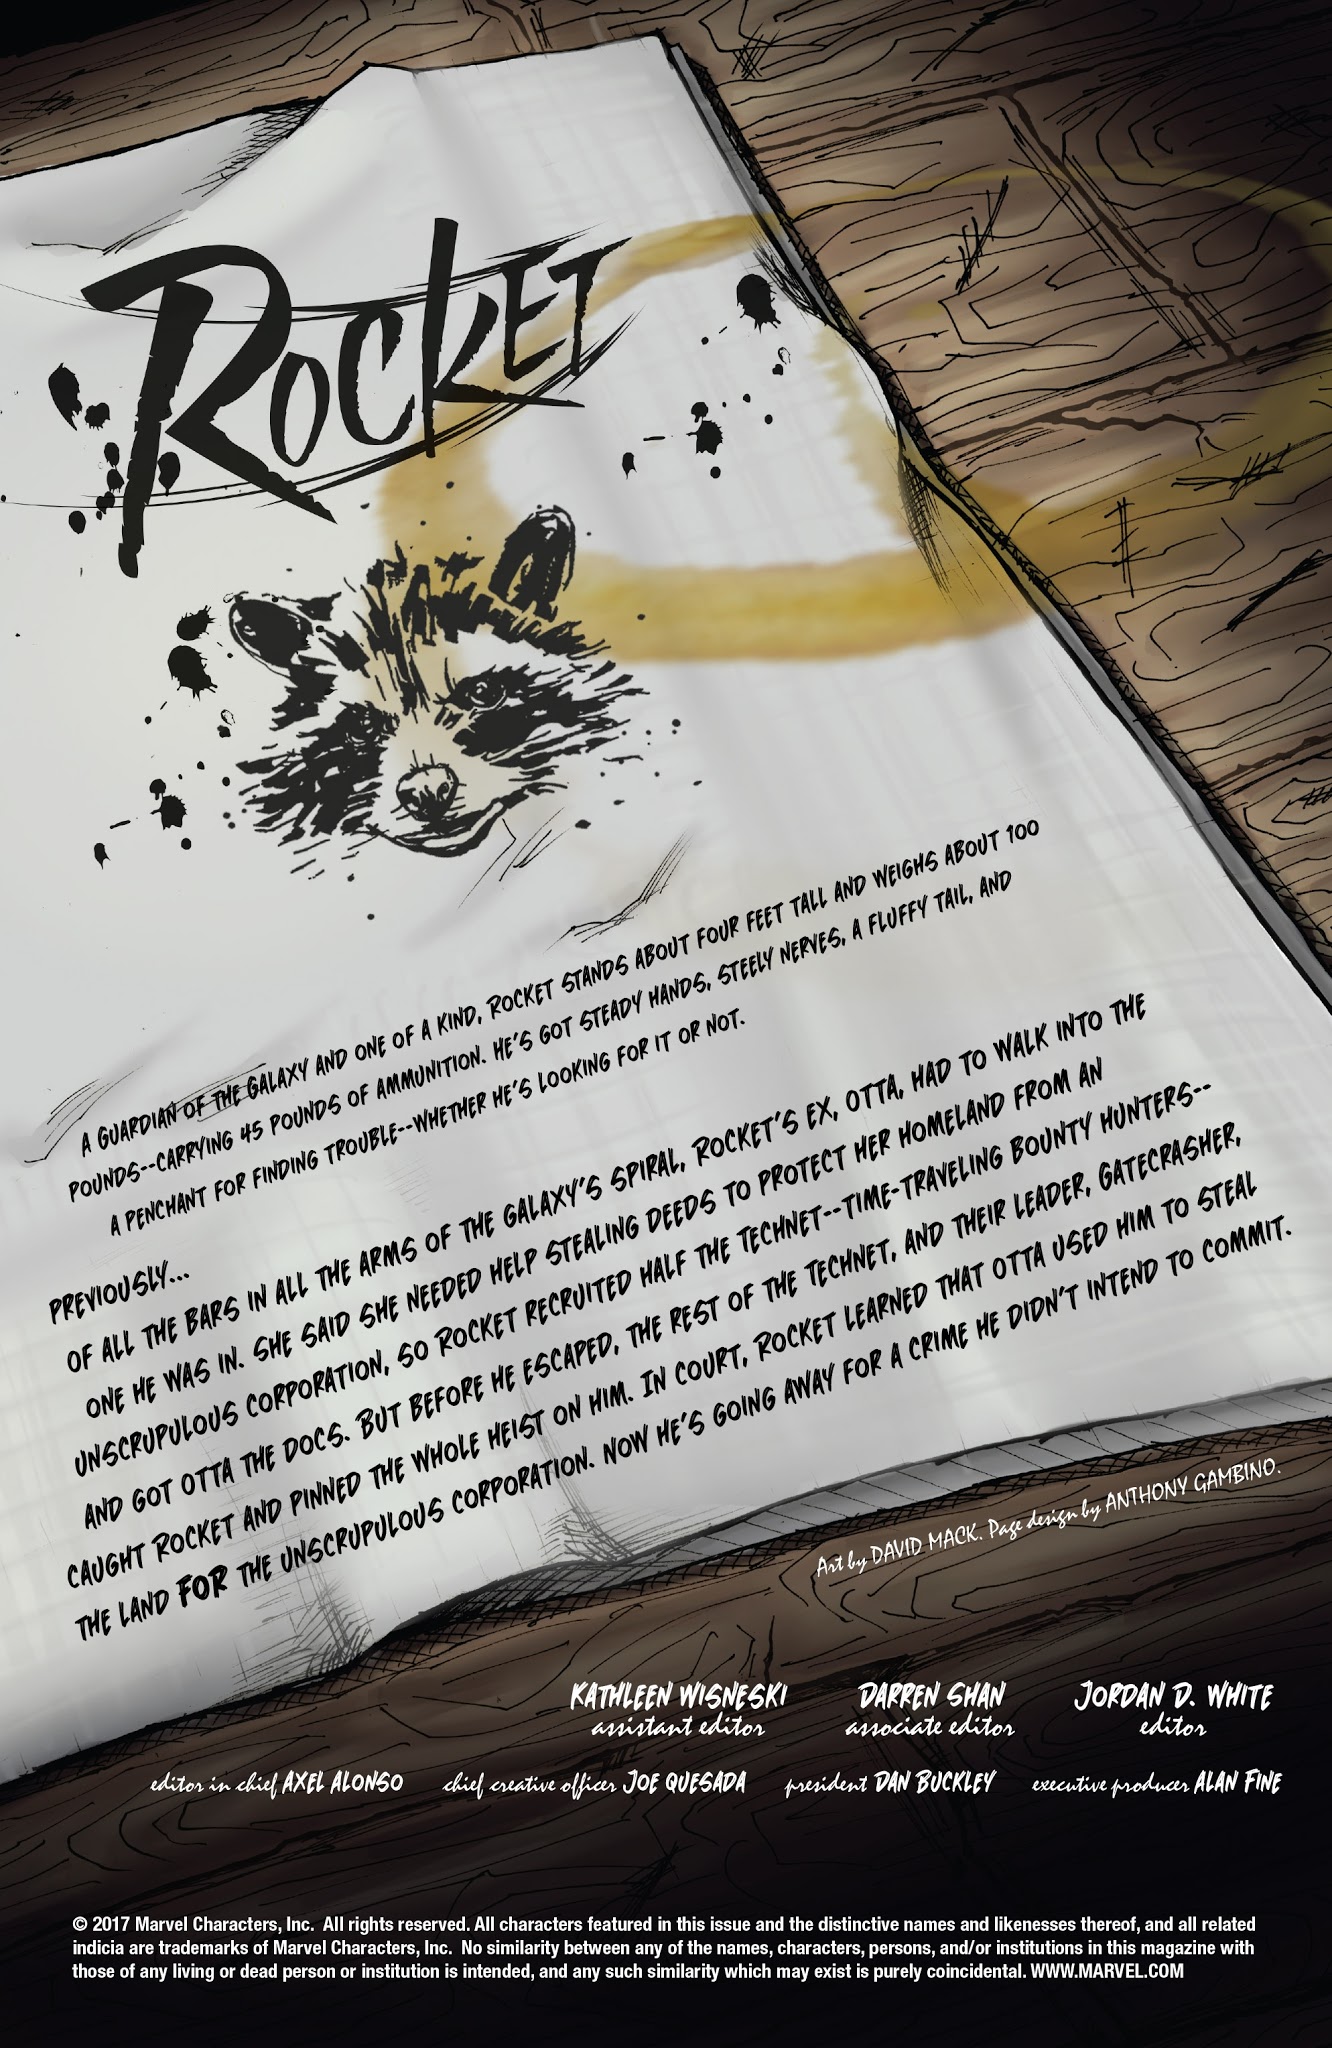 Read online Rocket comic -  Issue #3 - 2